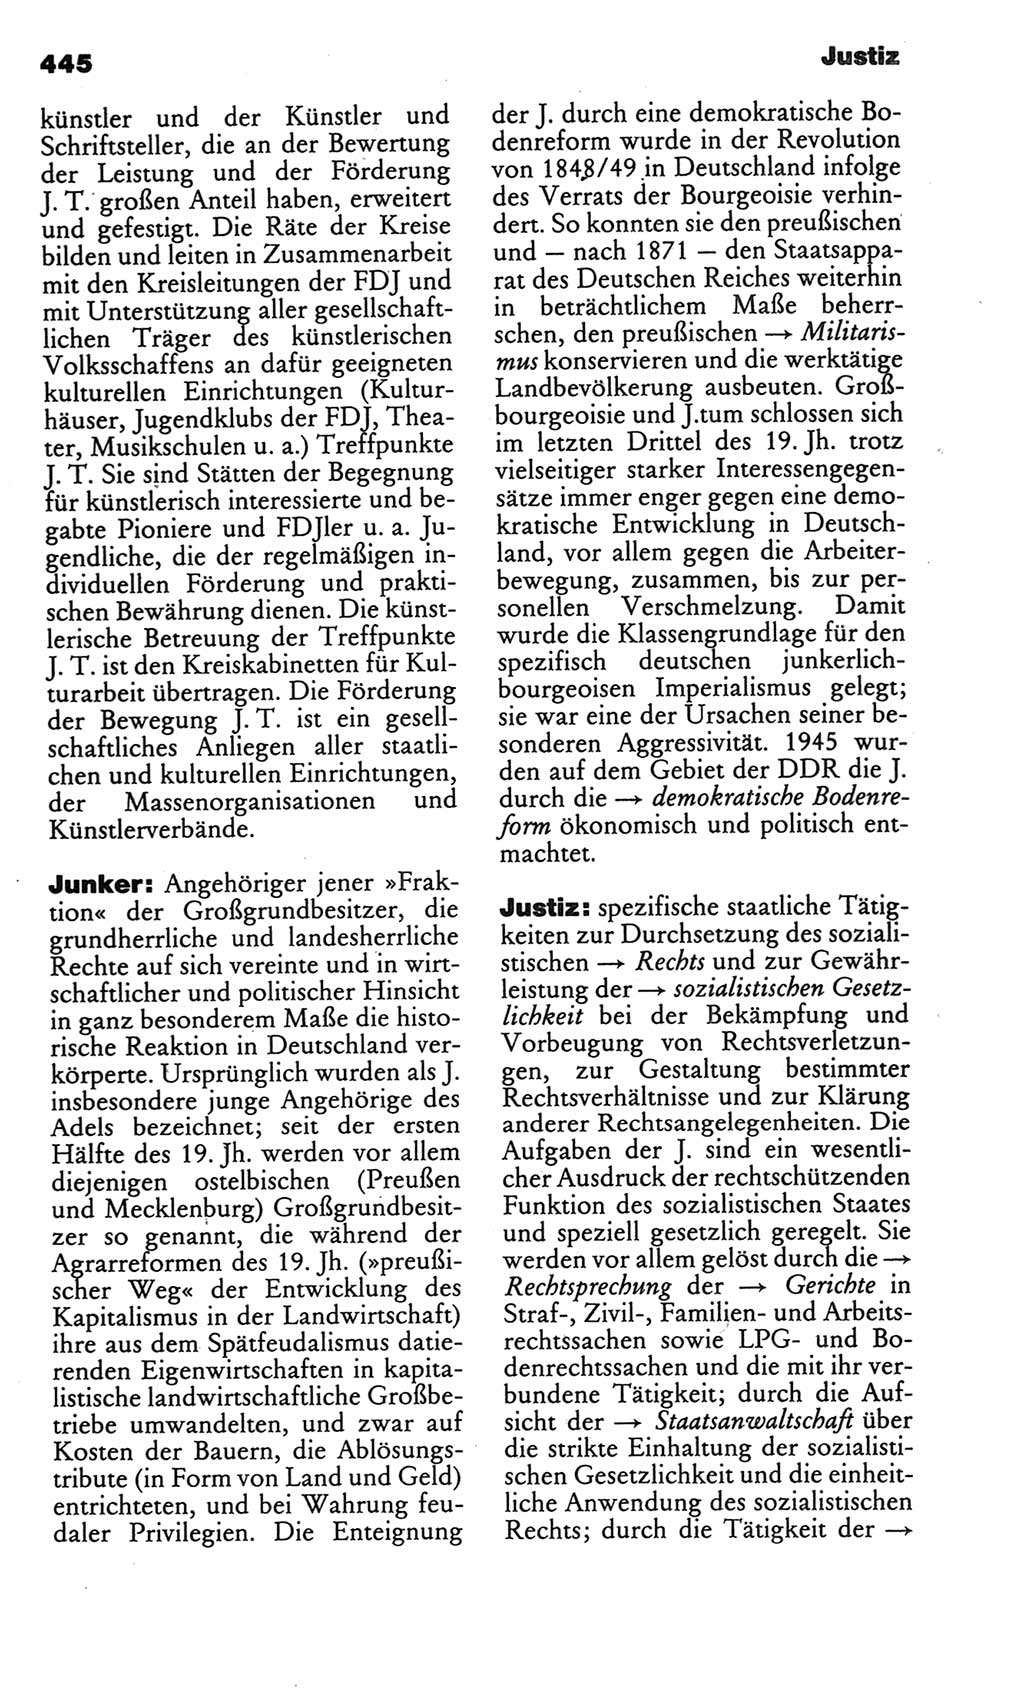 Kleines politisches Wörterbuch [Deutsche Demokratische Republik (DDR)] 1986, Seite 445 (Kl. pol. Wb. DDR 1986, S. 445)